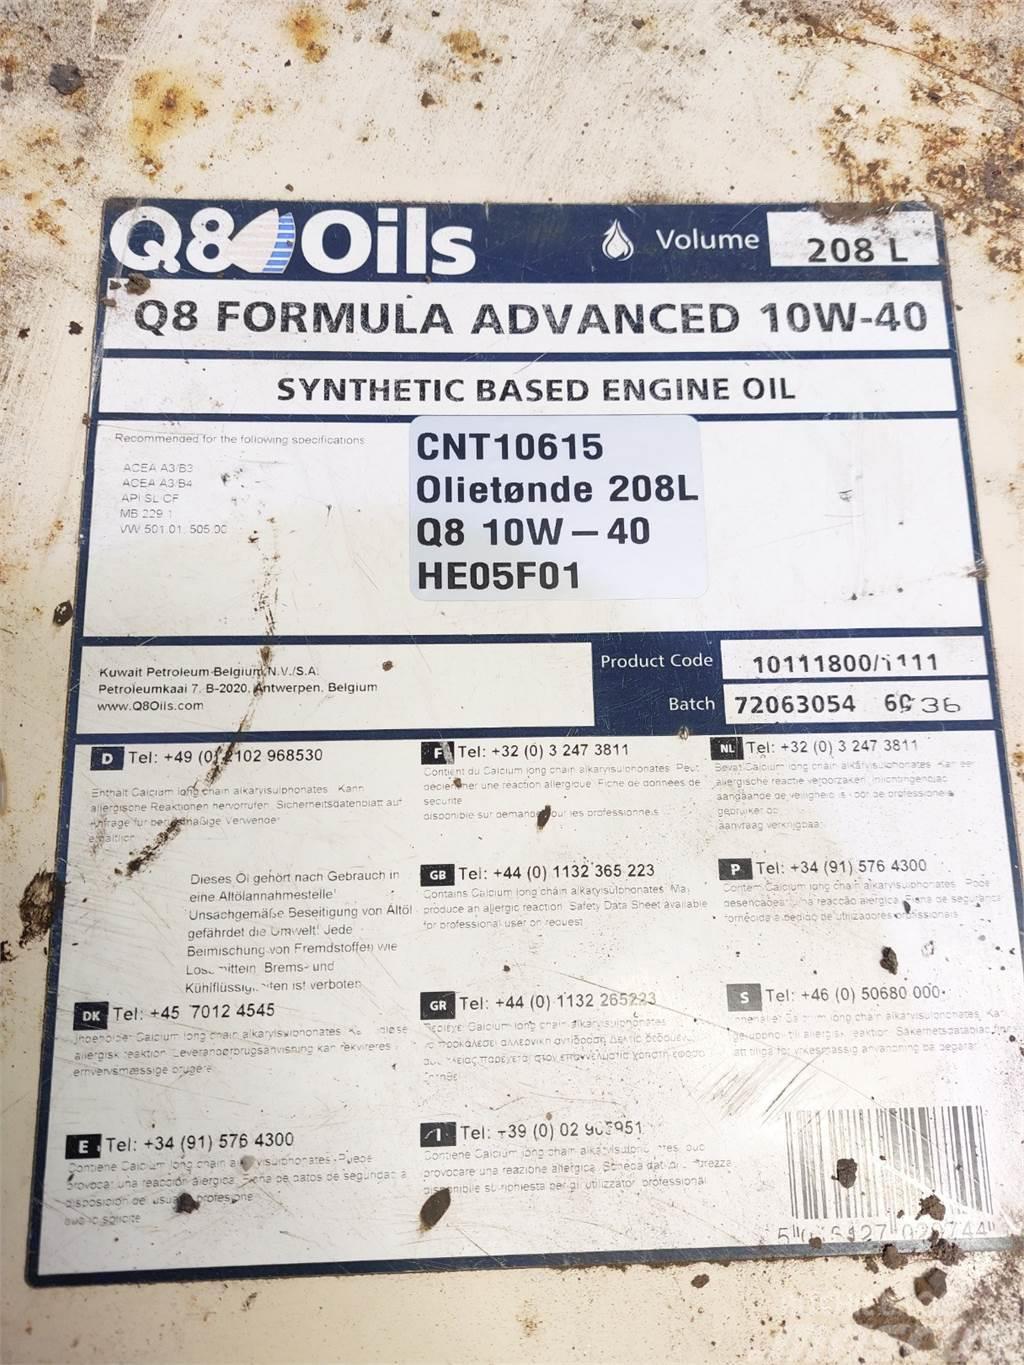  Oiletønde 208L Q8 10W-40 Synthetich Based Andet - entreprenør